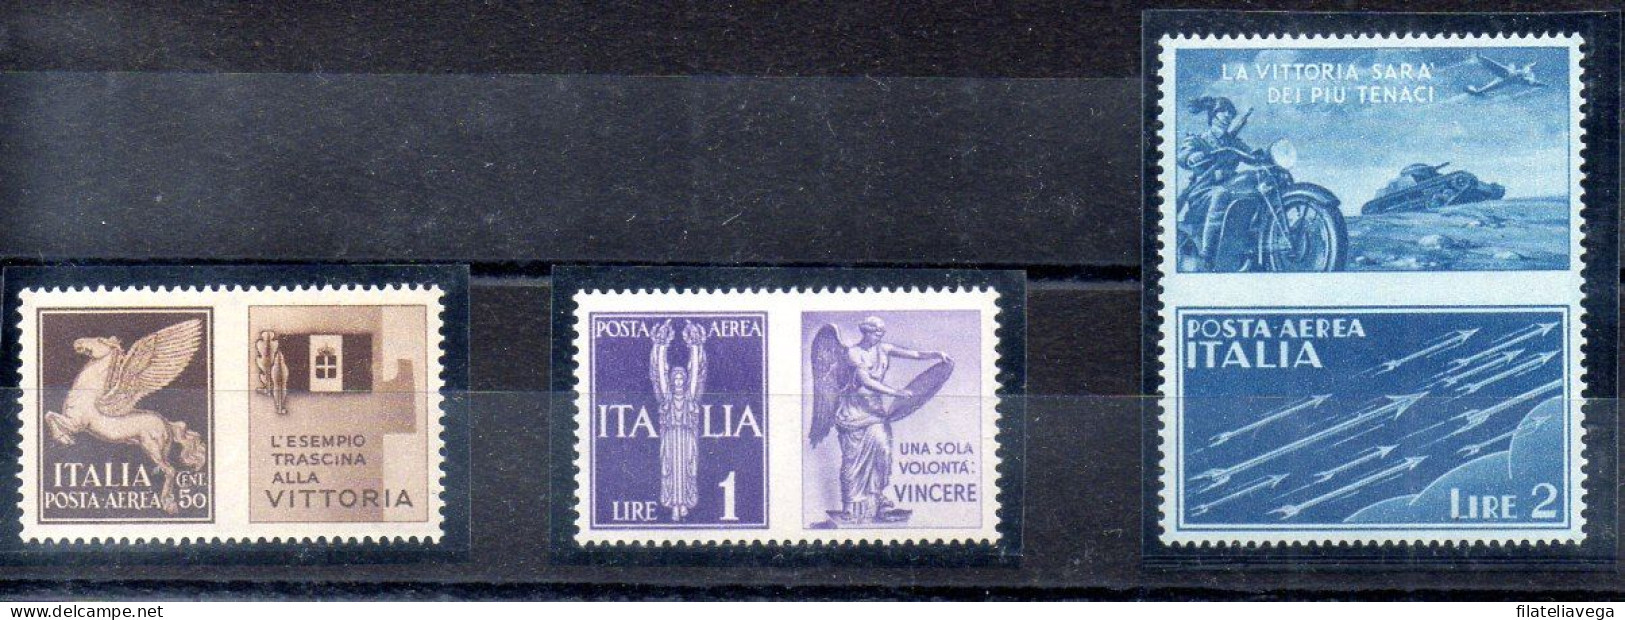 Italia 3 Series "PROPAGANDA DE GUERRA" Año 1942 -NO EMITIDOS- Nº Michel 328P5 + 330P6 + 331P7 * - Propaganda De Guerra